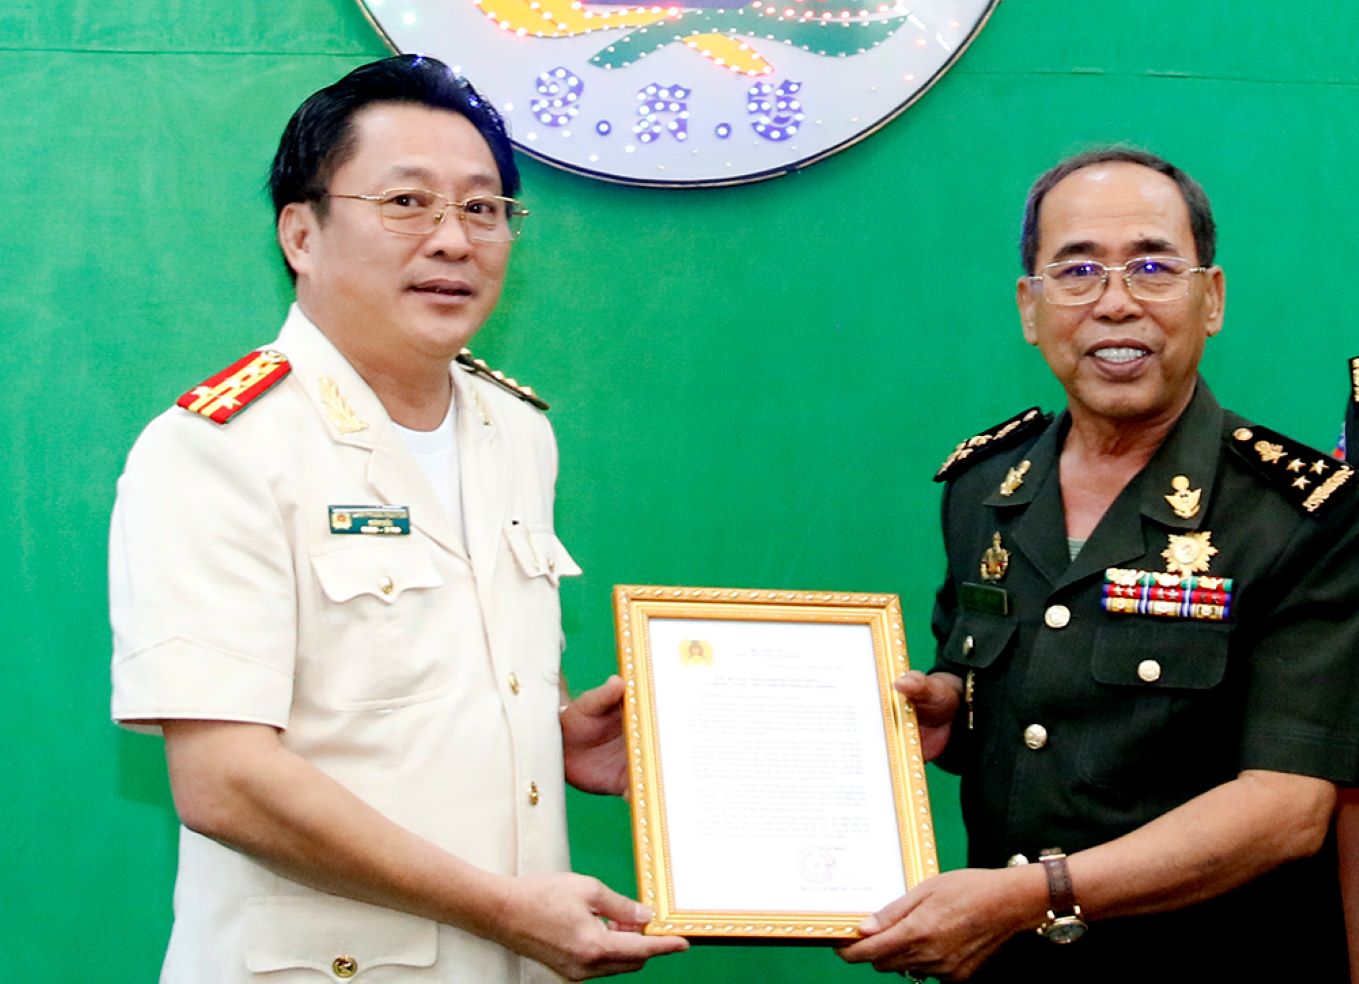 พันเอก ลัม เฟือก เหงียน ผู้อำนวยการตำรวจภูธรอันซาง มอบจดหมายอวยพรปีใหม่ถึง พลเอก เดียง ซา รุน รองผู้บัญชาการ กองบัญชาการกองทัพบกกัมพูชา ภาพถ่าย: “Vu Tien”